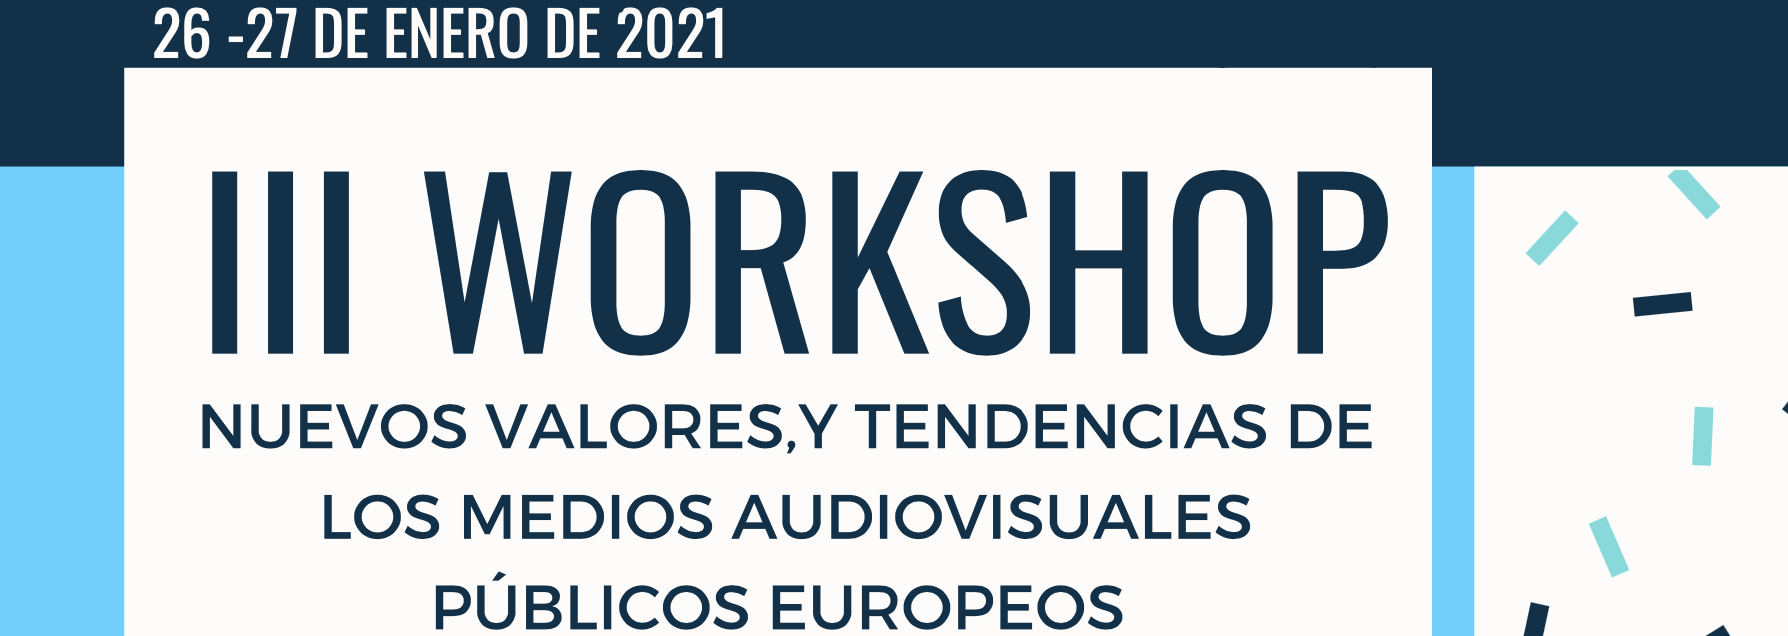 Días 26 y 27: Congreso virtual sobre los valores  y tendencias de los medios audiovisuales públicos